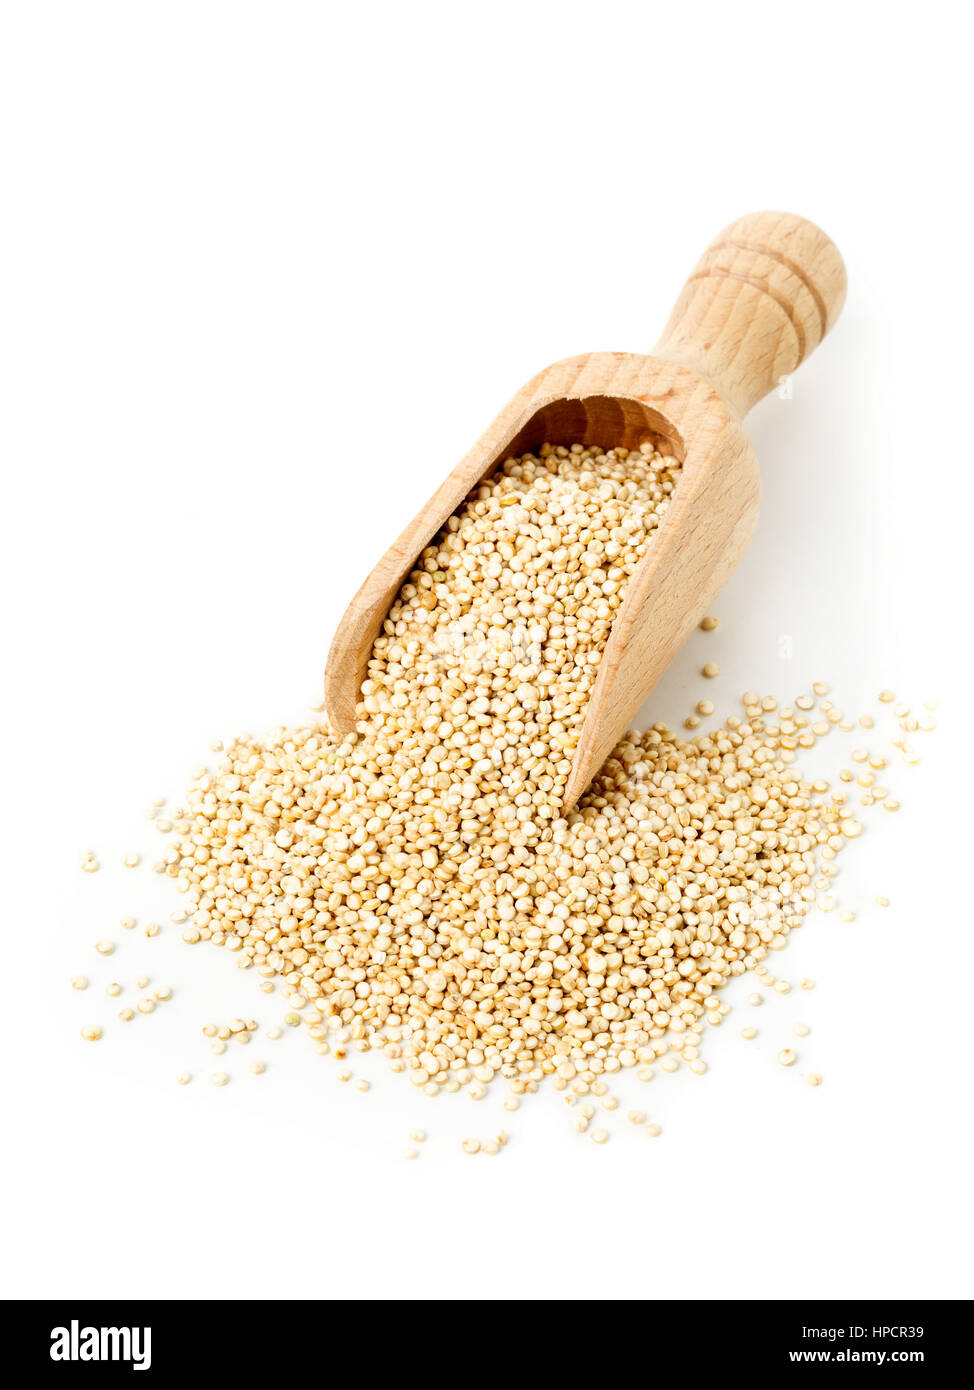 Ensemble, les matières premières non transformées, de semences de quinoa dans scoop en bois sur fond blanc Banque D'Images